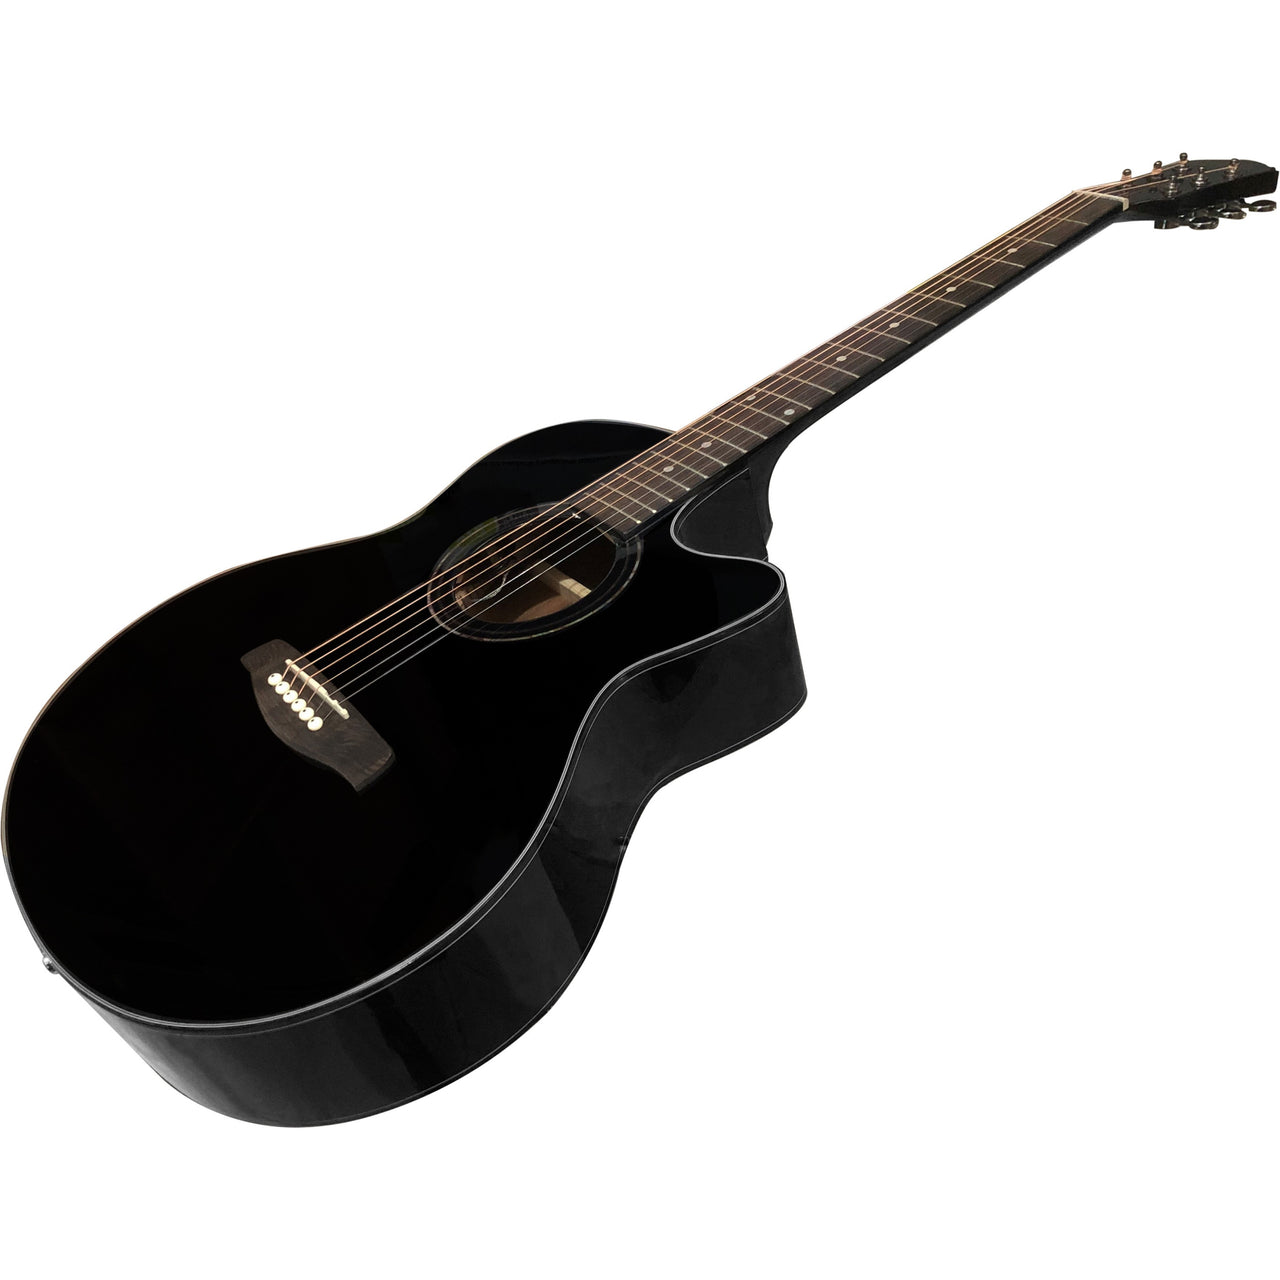 Guitarra Electroacustica La Sevillana Negro, Fo-300ceq Bkl